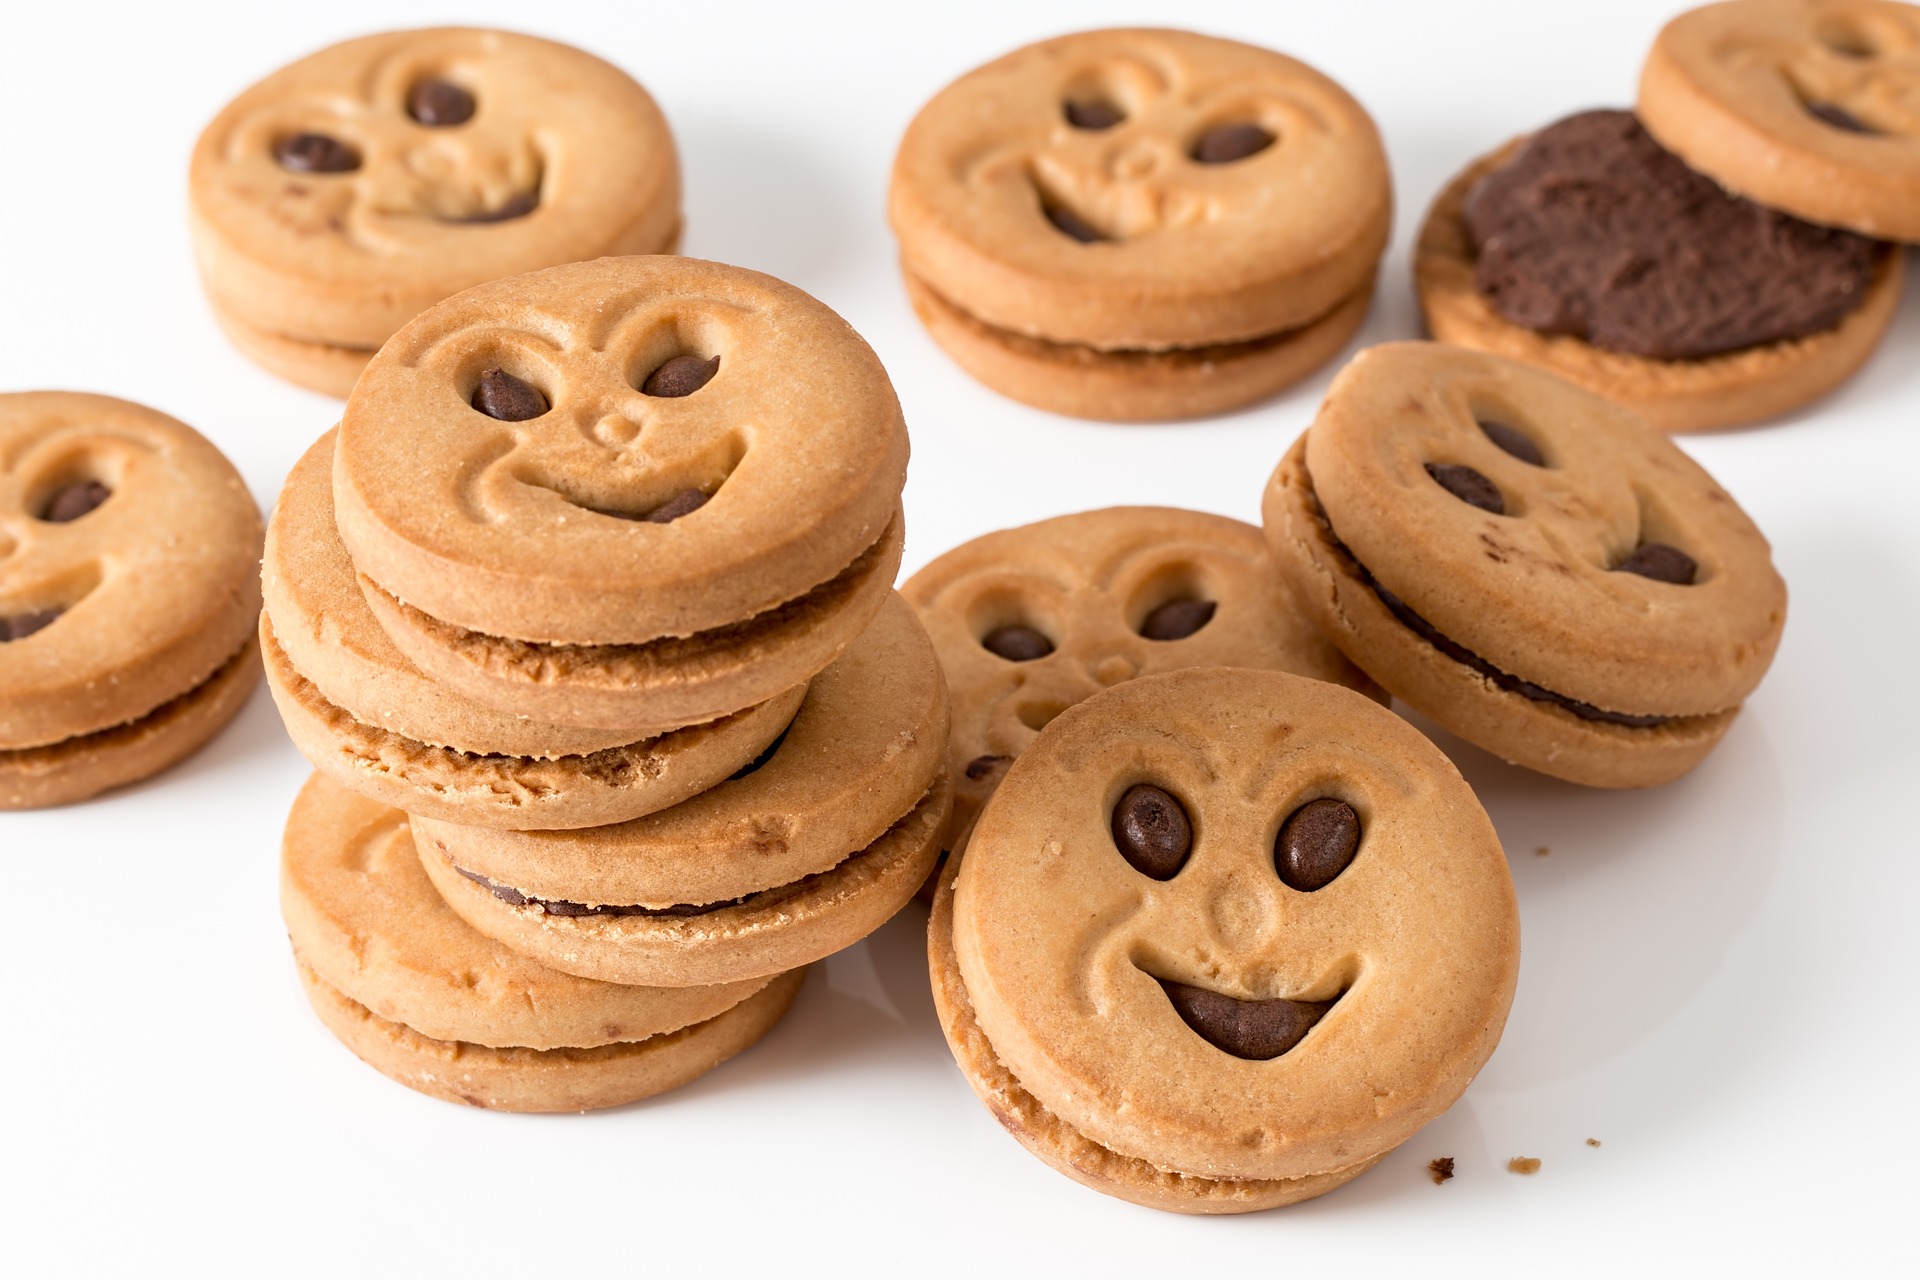 junk-foods-cookies